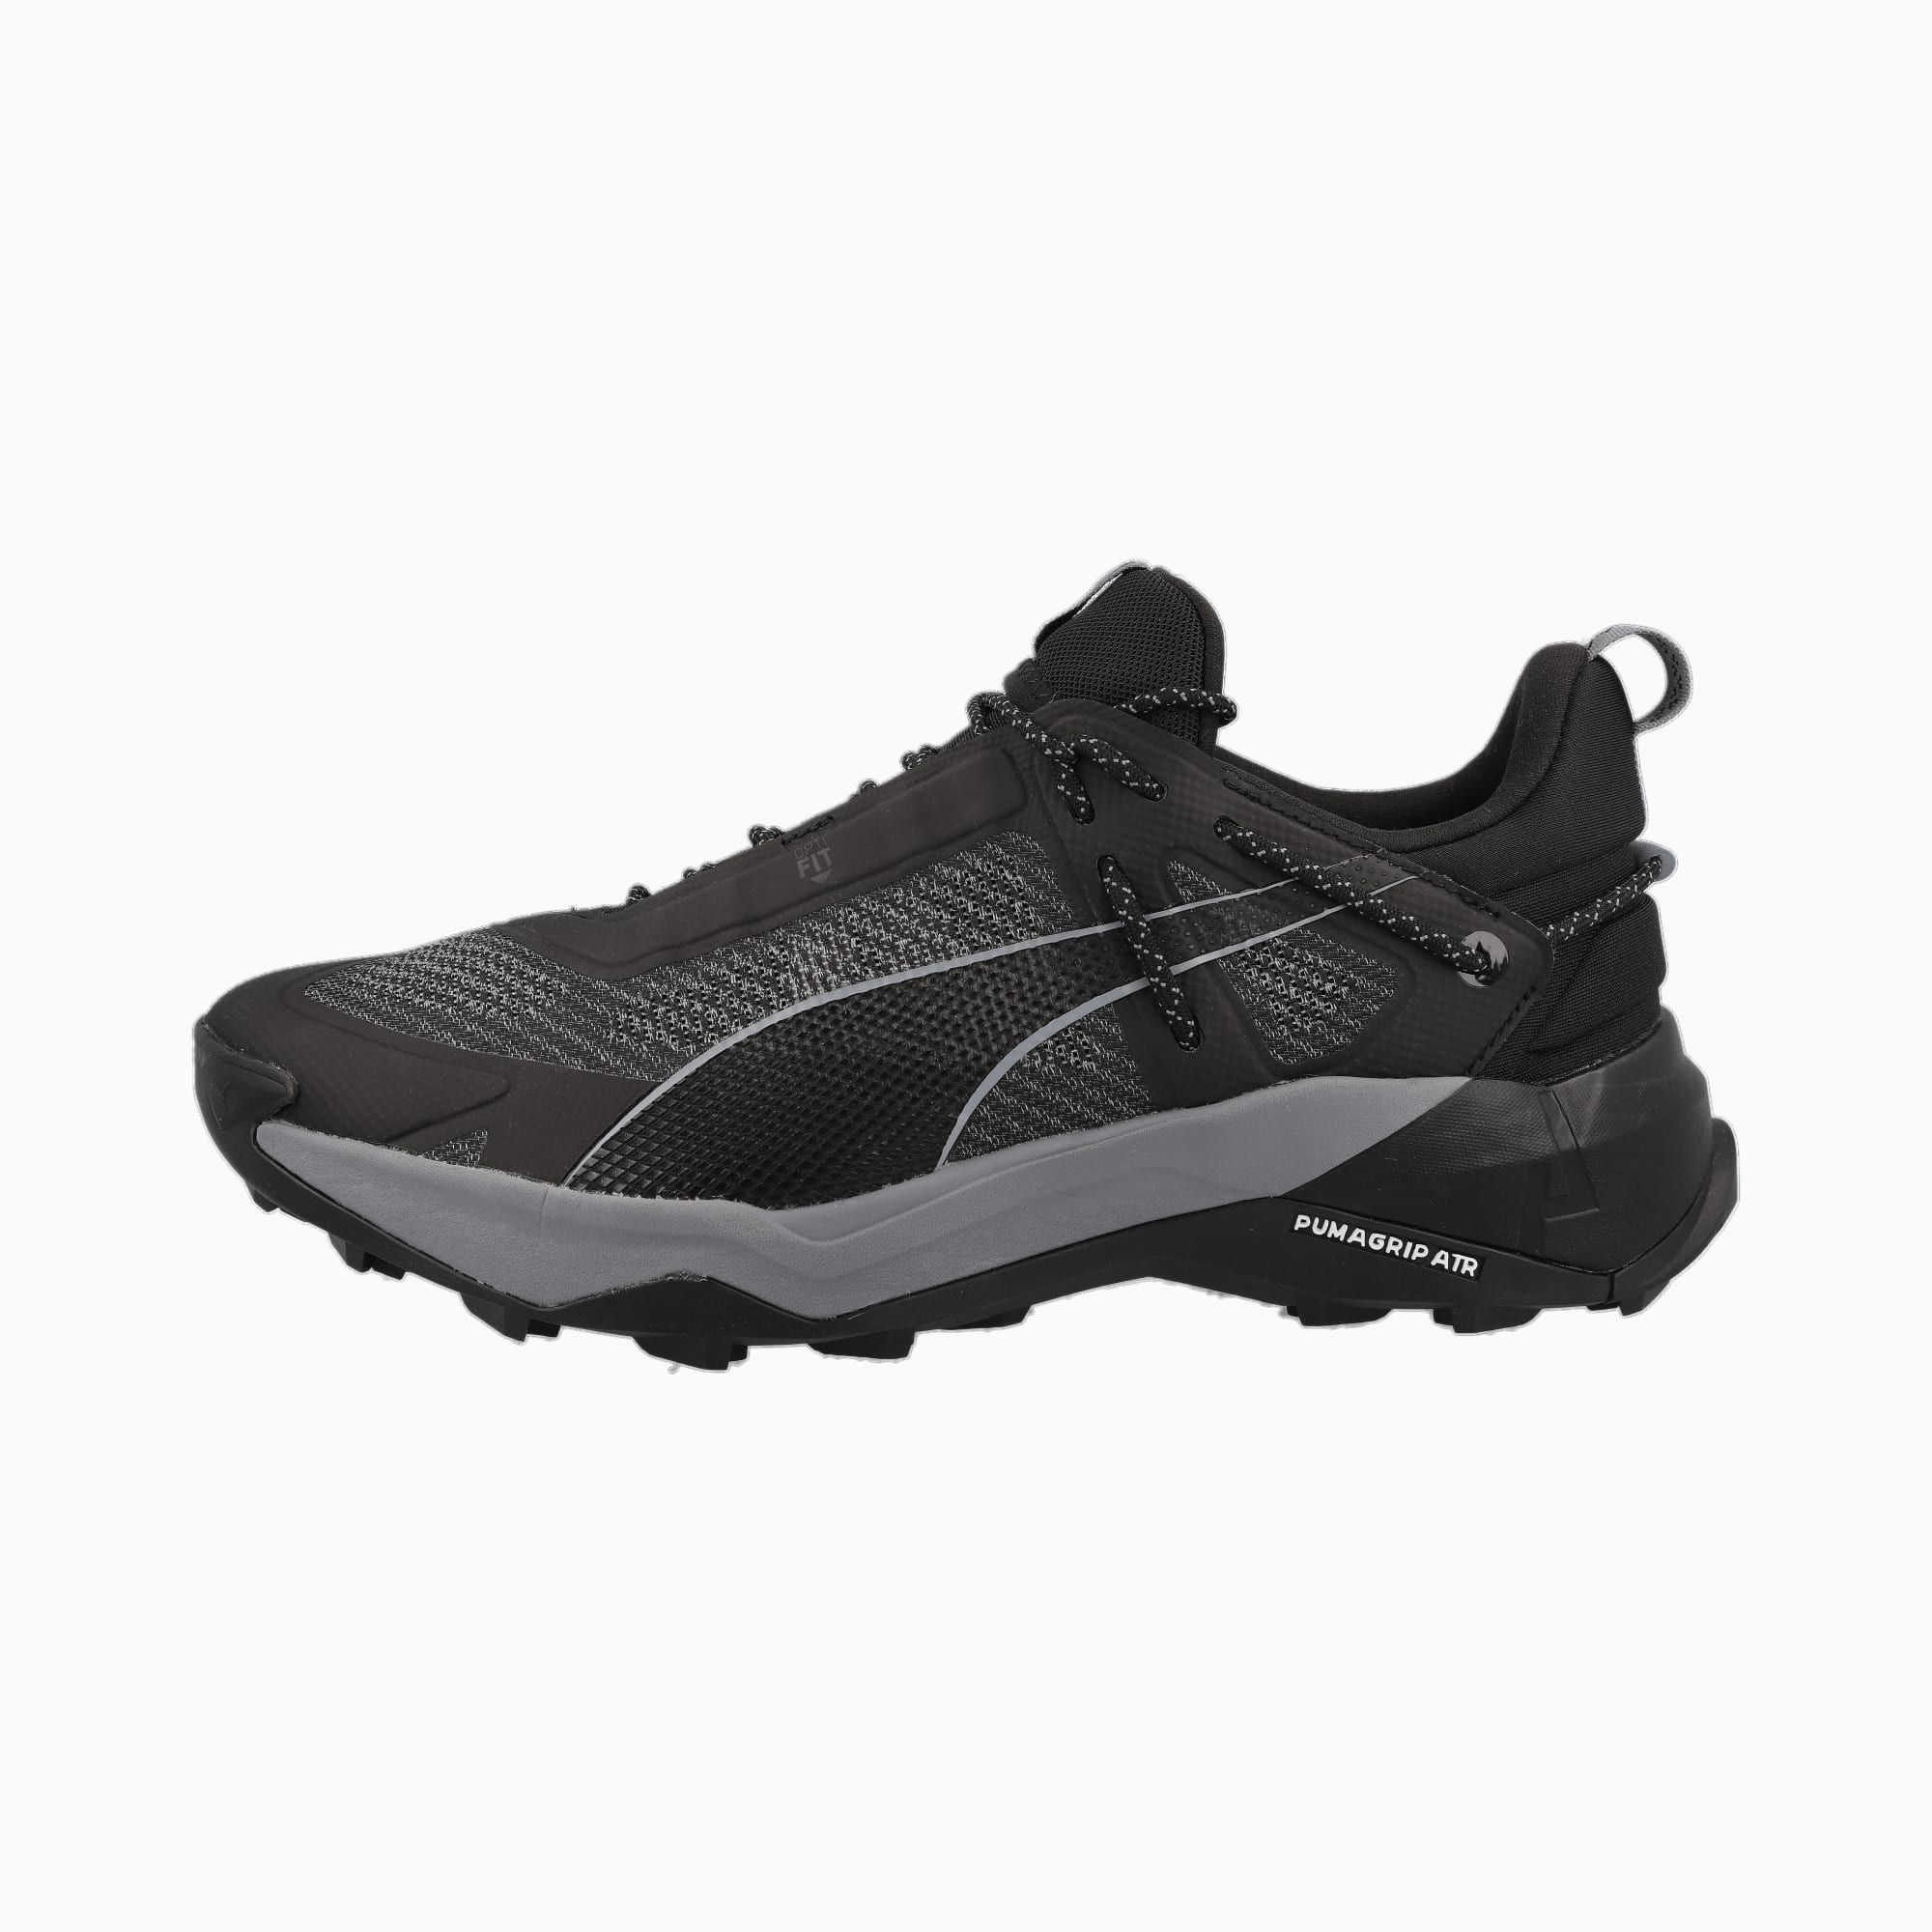 PUMA Explore Nitro™ Men's Hiking Shoe Sneakers, Black/Grey Tile